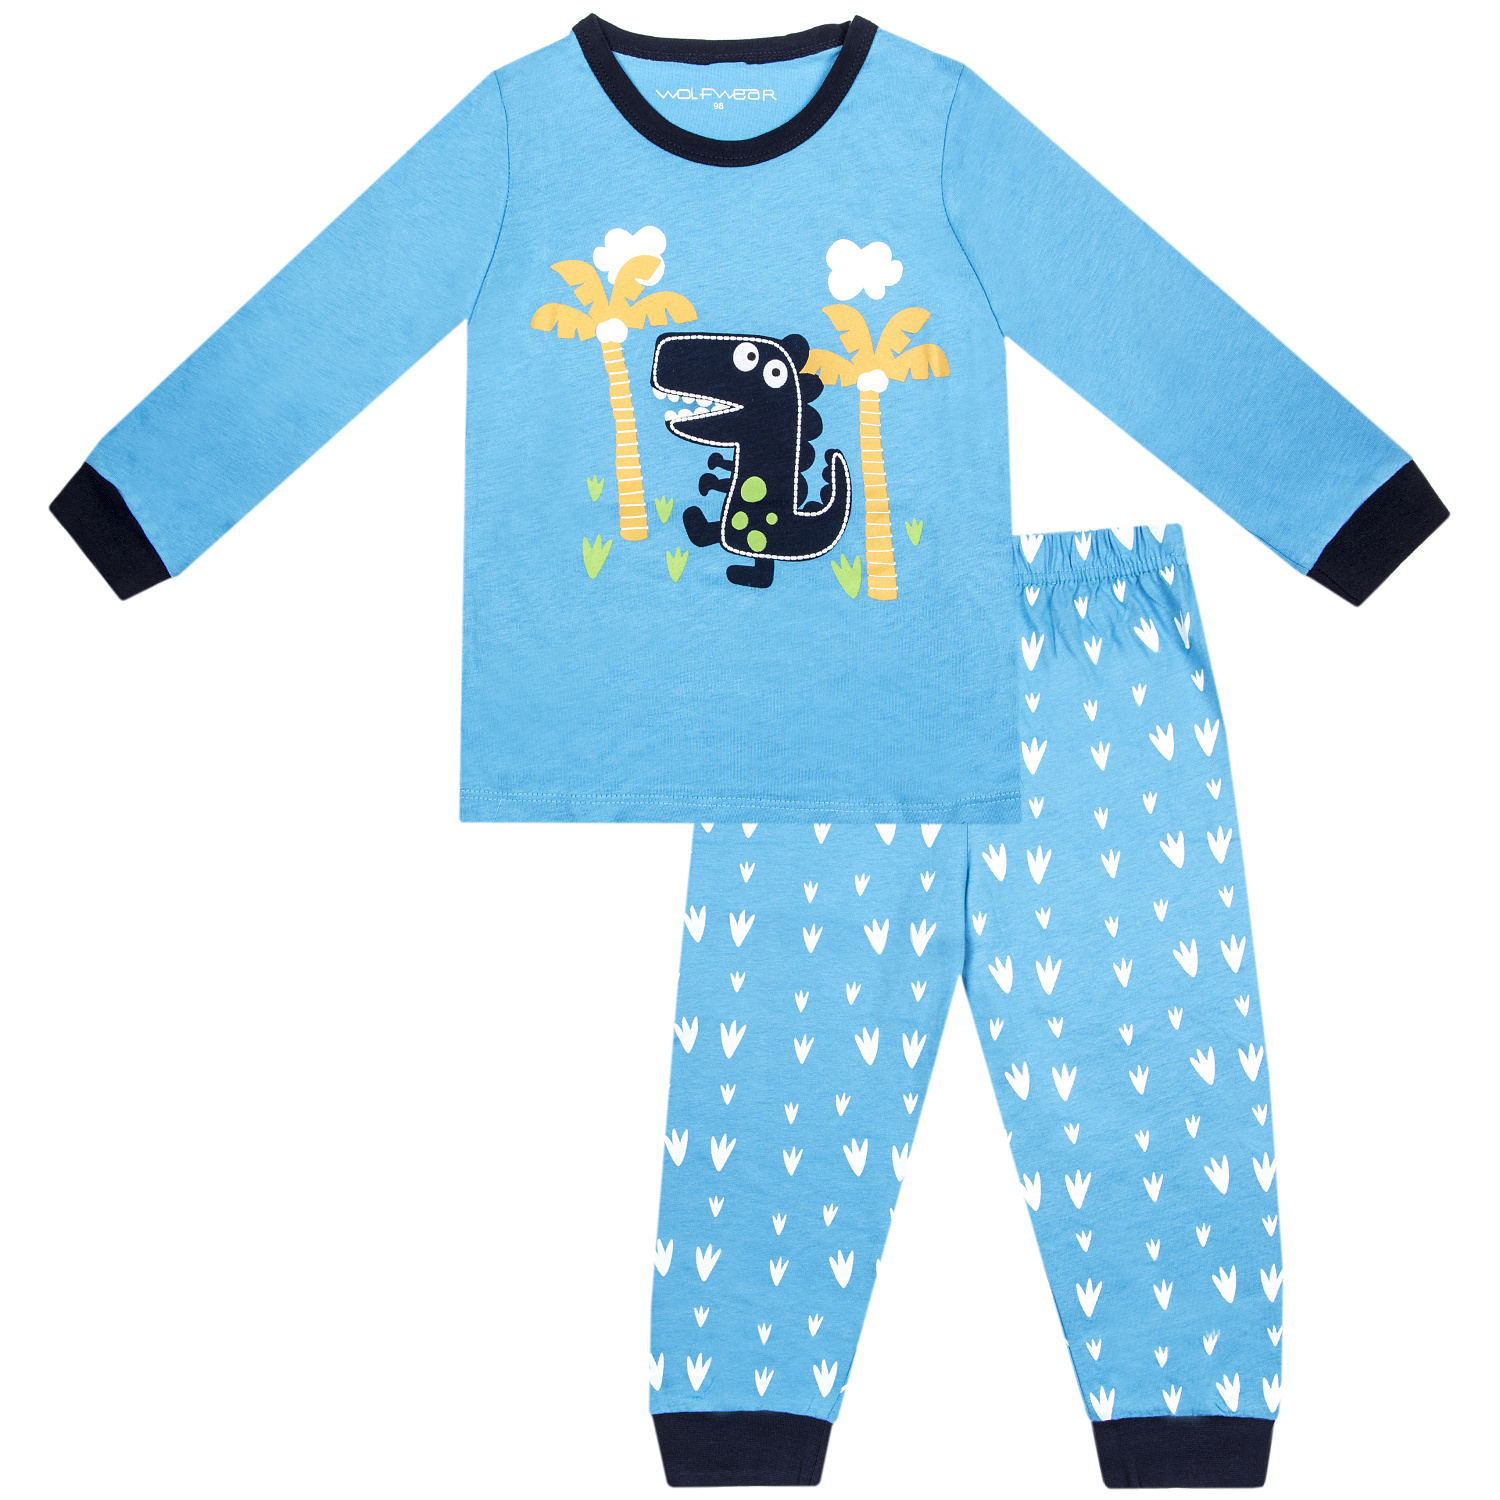 Chlapecké pyžamo - Wolf S2254, světle modrá Barva: Modrá, Velikost: 86